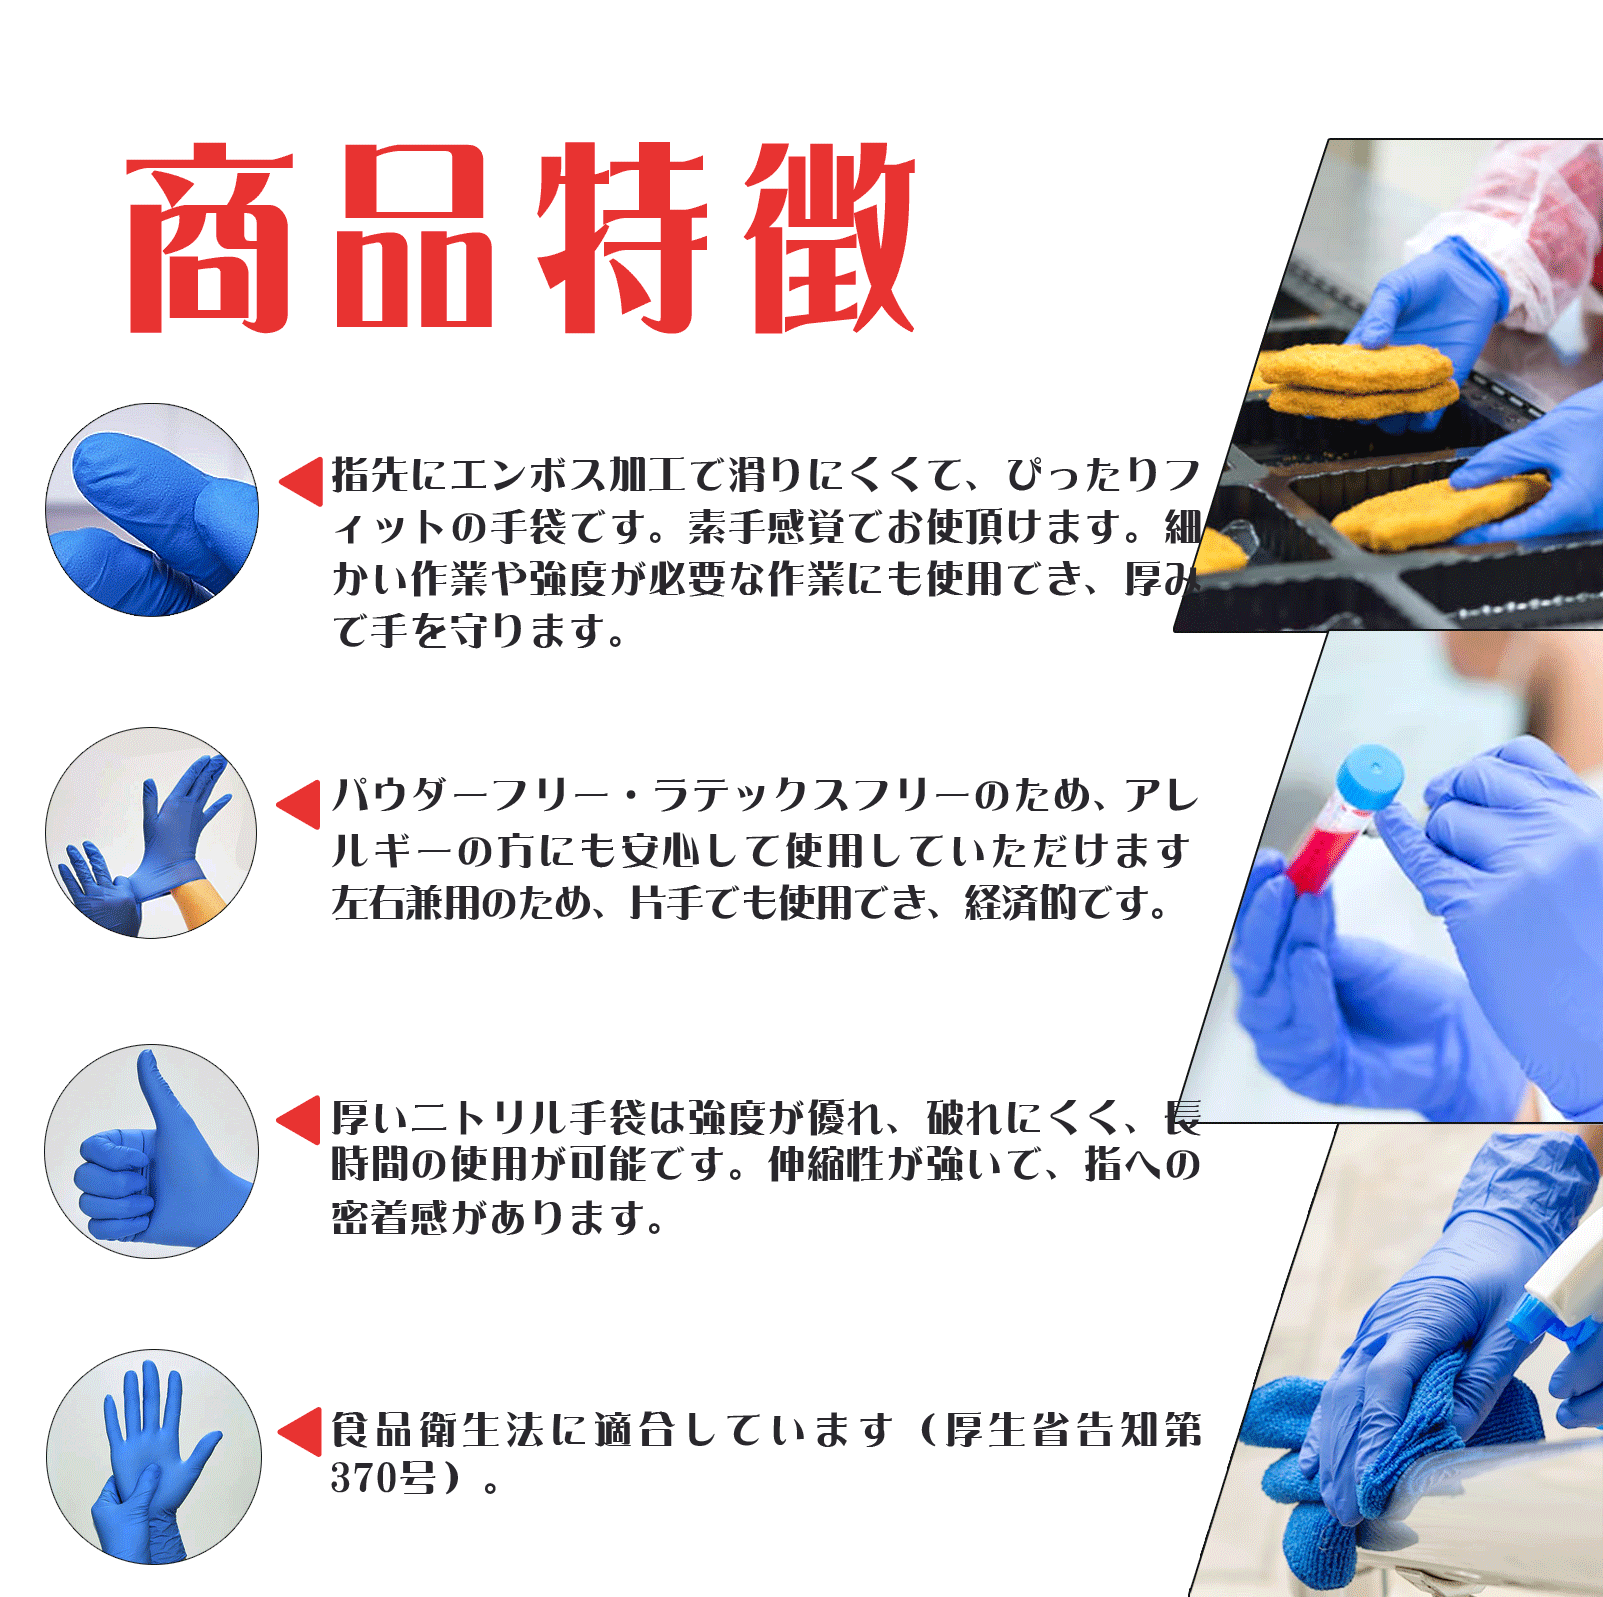 【楽天市場】ニトリル手袋 ブルー 100枚 ニトリルグローブ 使い捨て